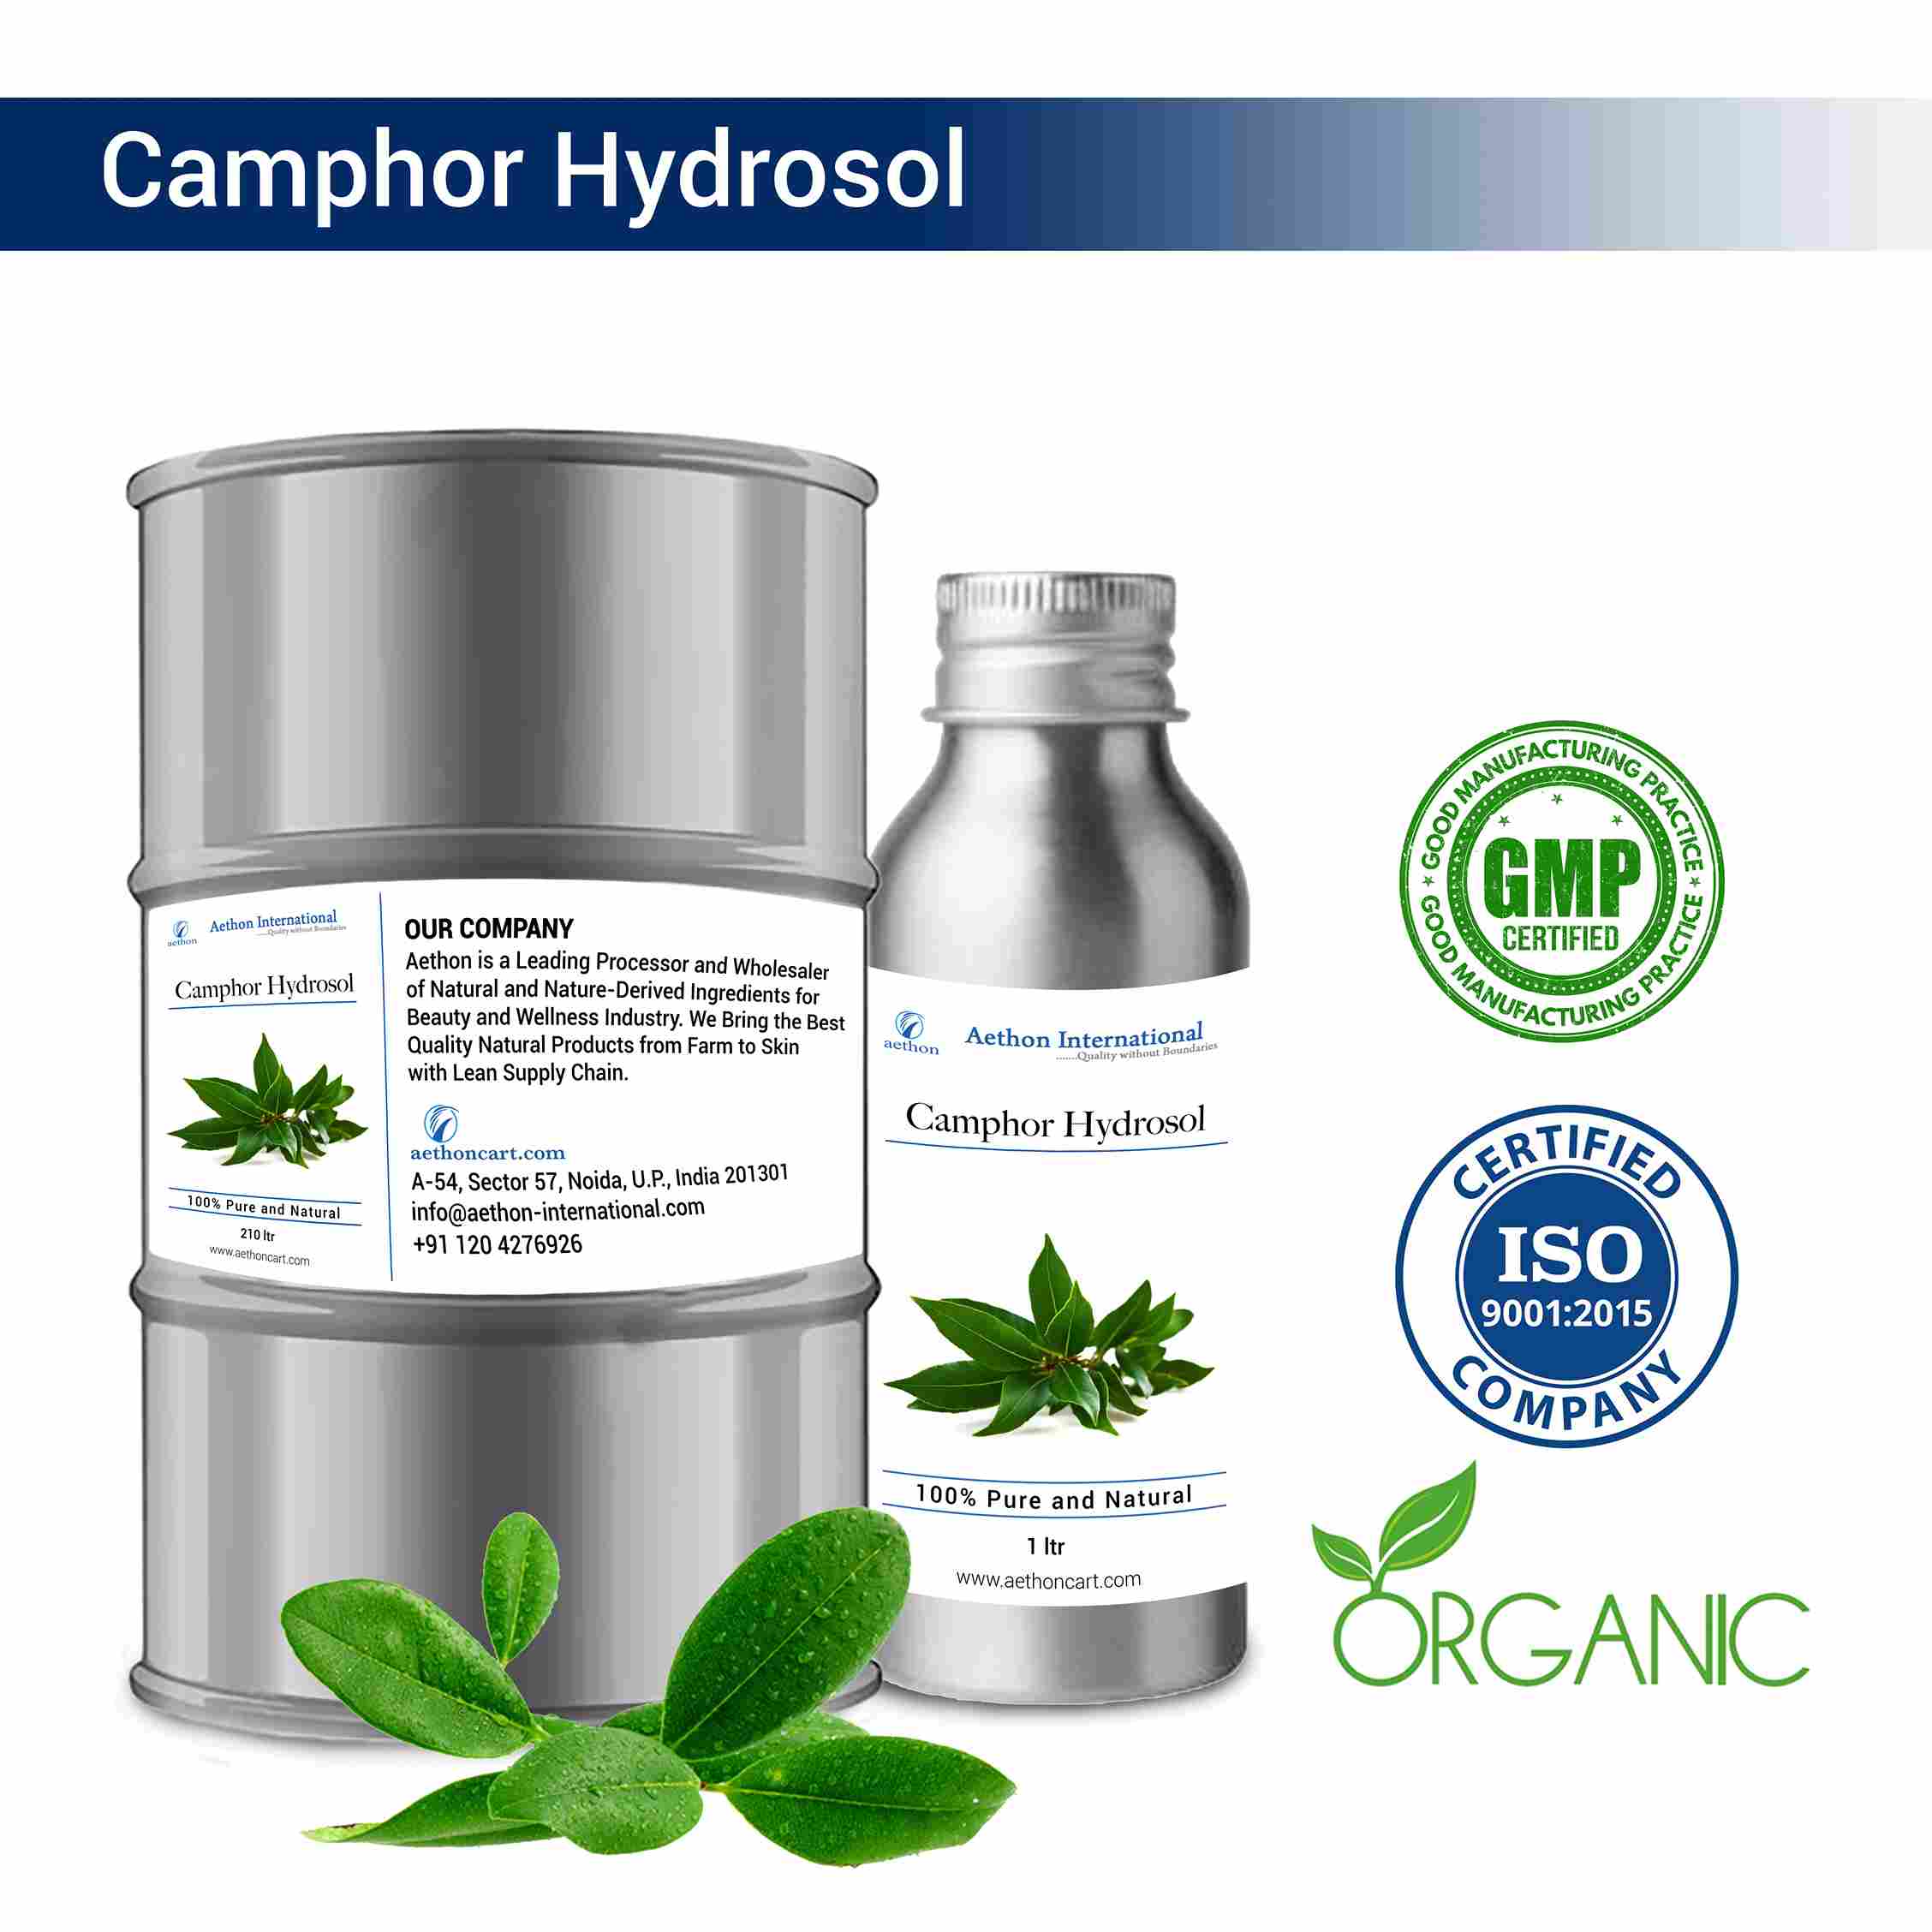 Camphor Hydrosol